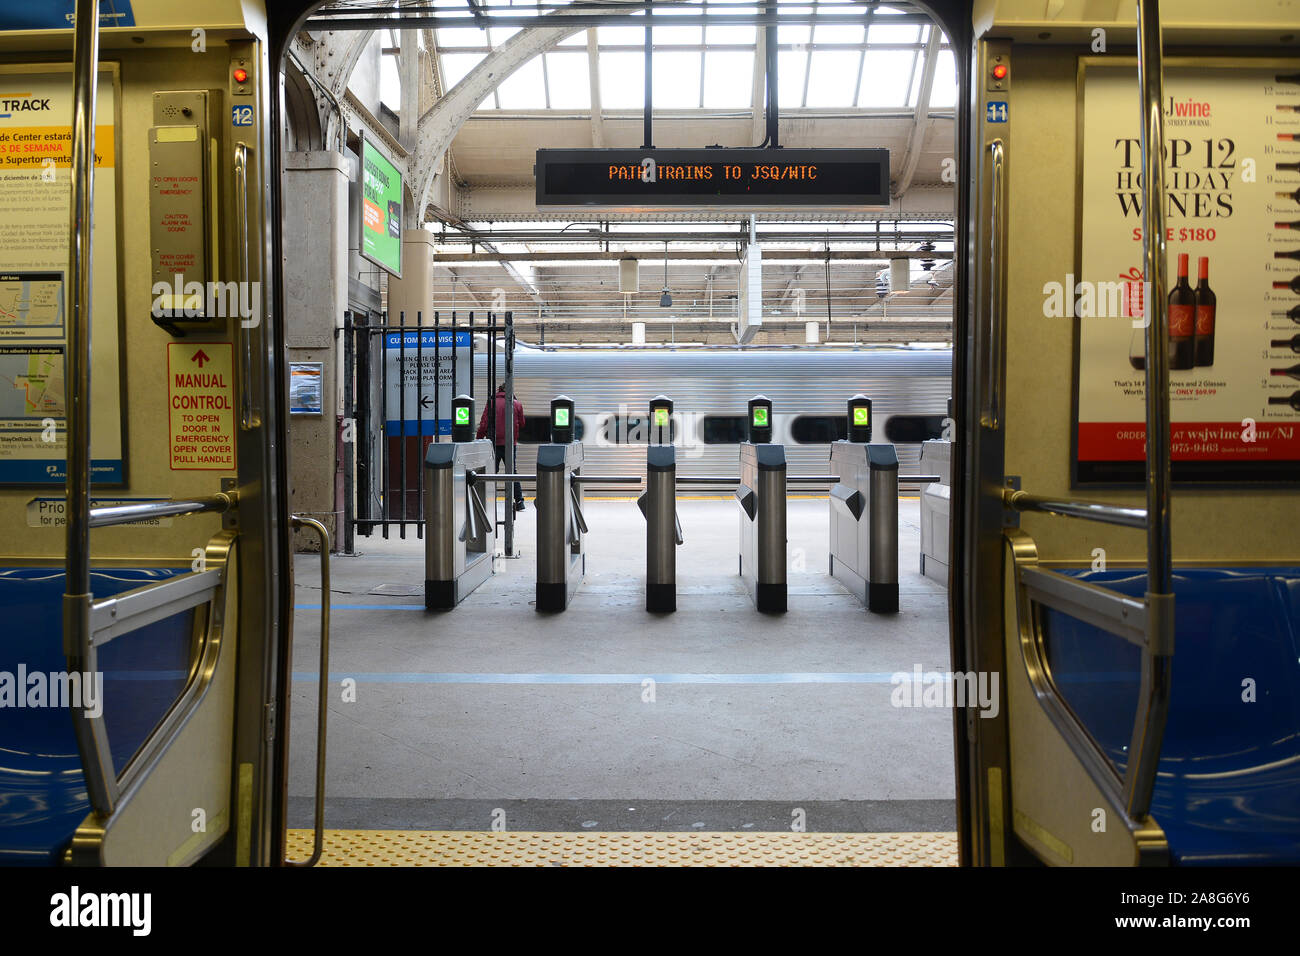 NEWARK, NEW JERSEY - 05 NOV 2019 : Vue de l'intérieur un chemin de former avec les portes ouvertes donnant sur la plate-forme avec des tourniquets et des train qui passe. Banque D'Images